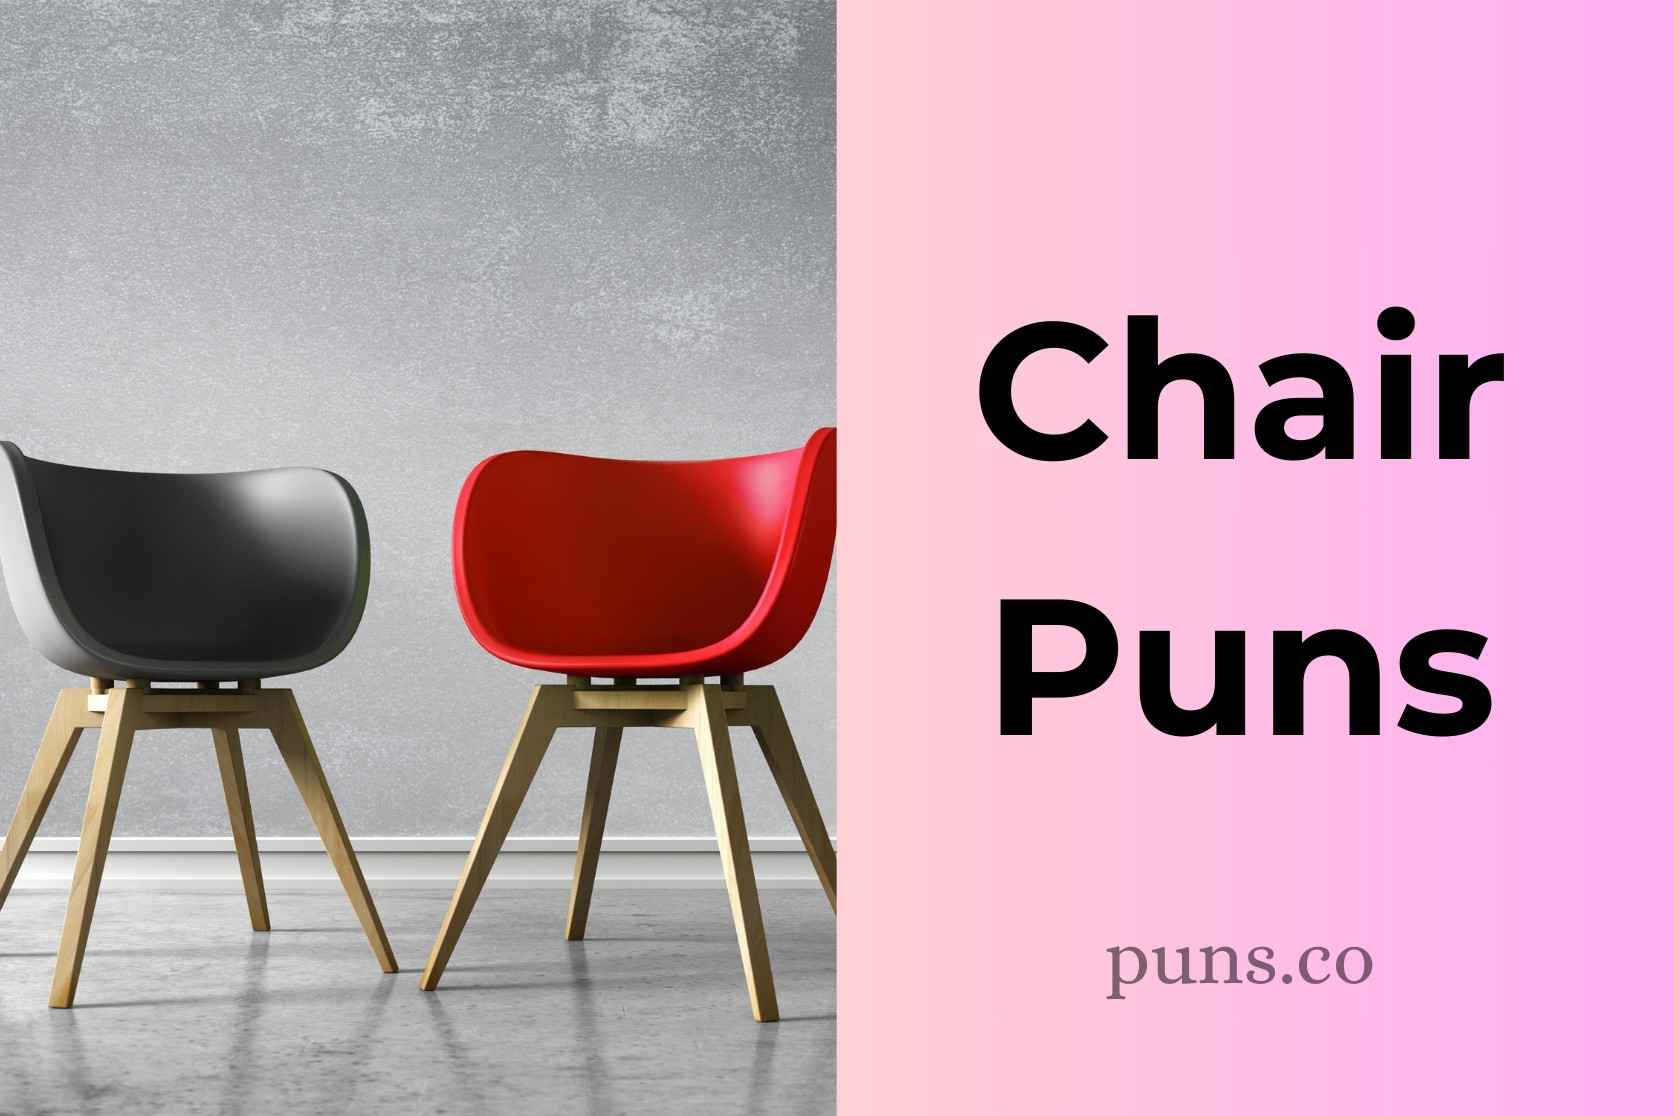 Chair Puns